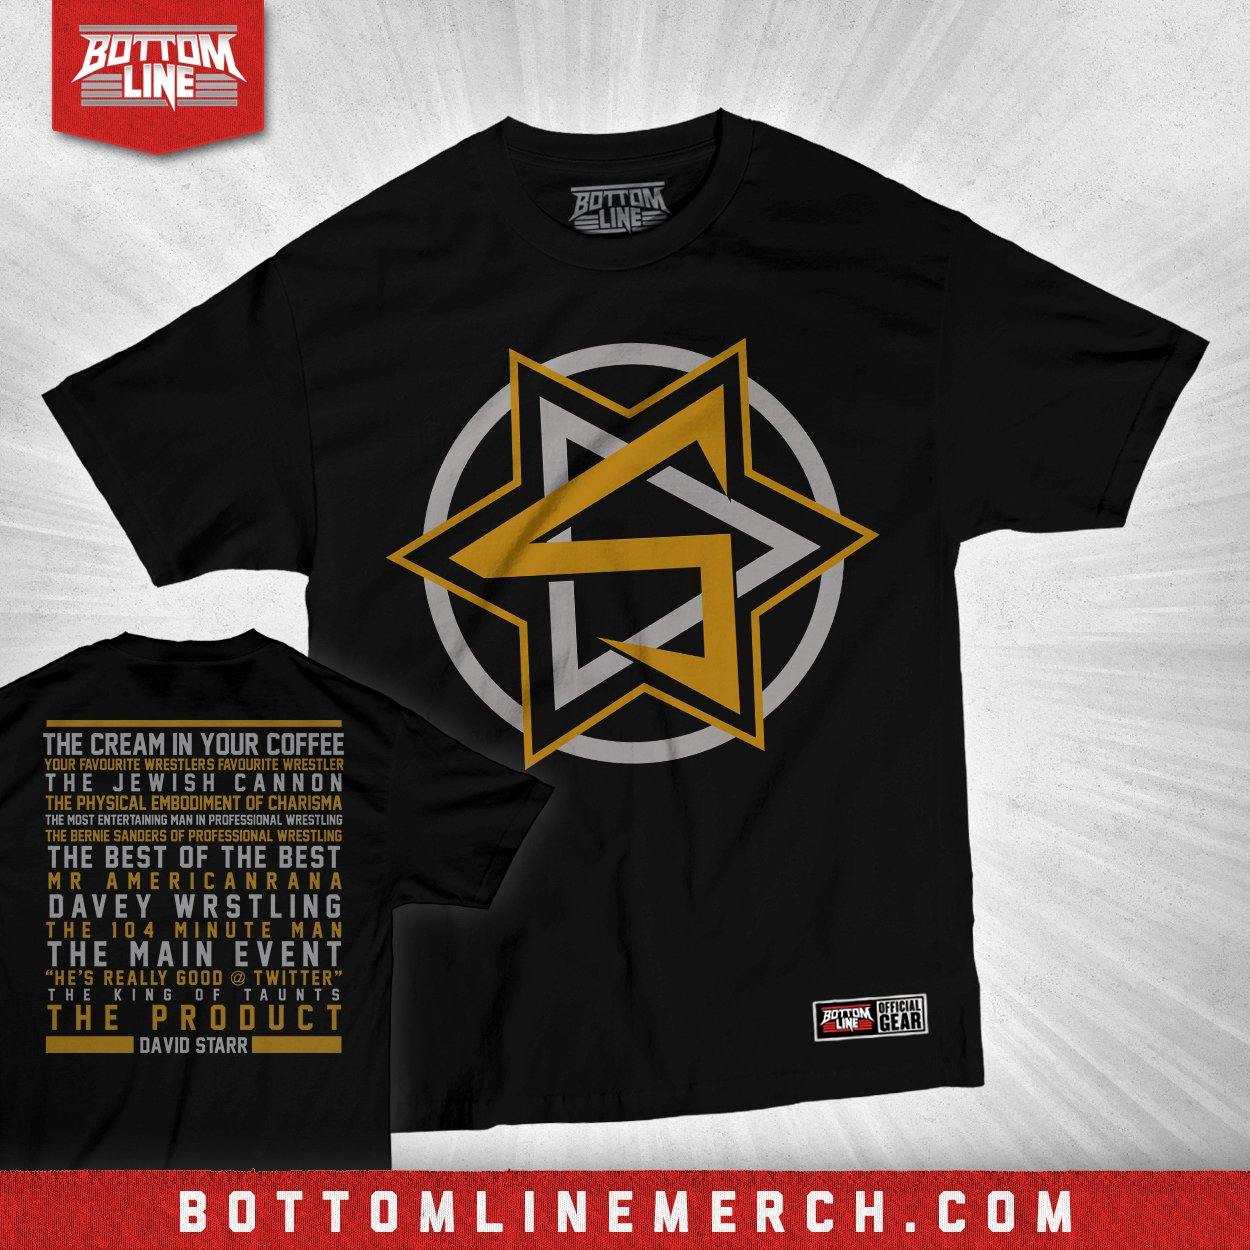 Buy Now – David Starr "New Nicknames" Shirt – Wrestler & Wrestling Merch – Bottom Line